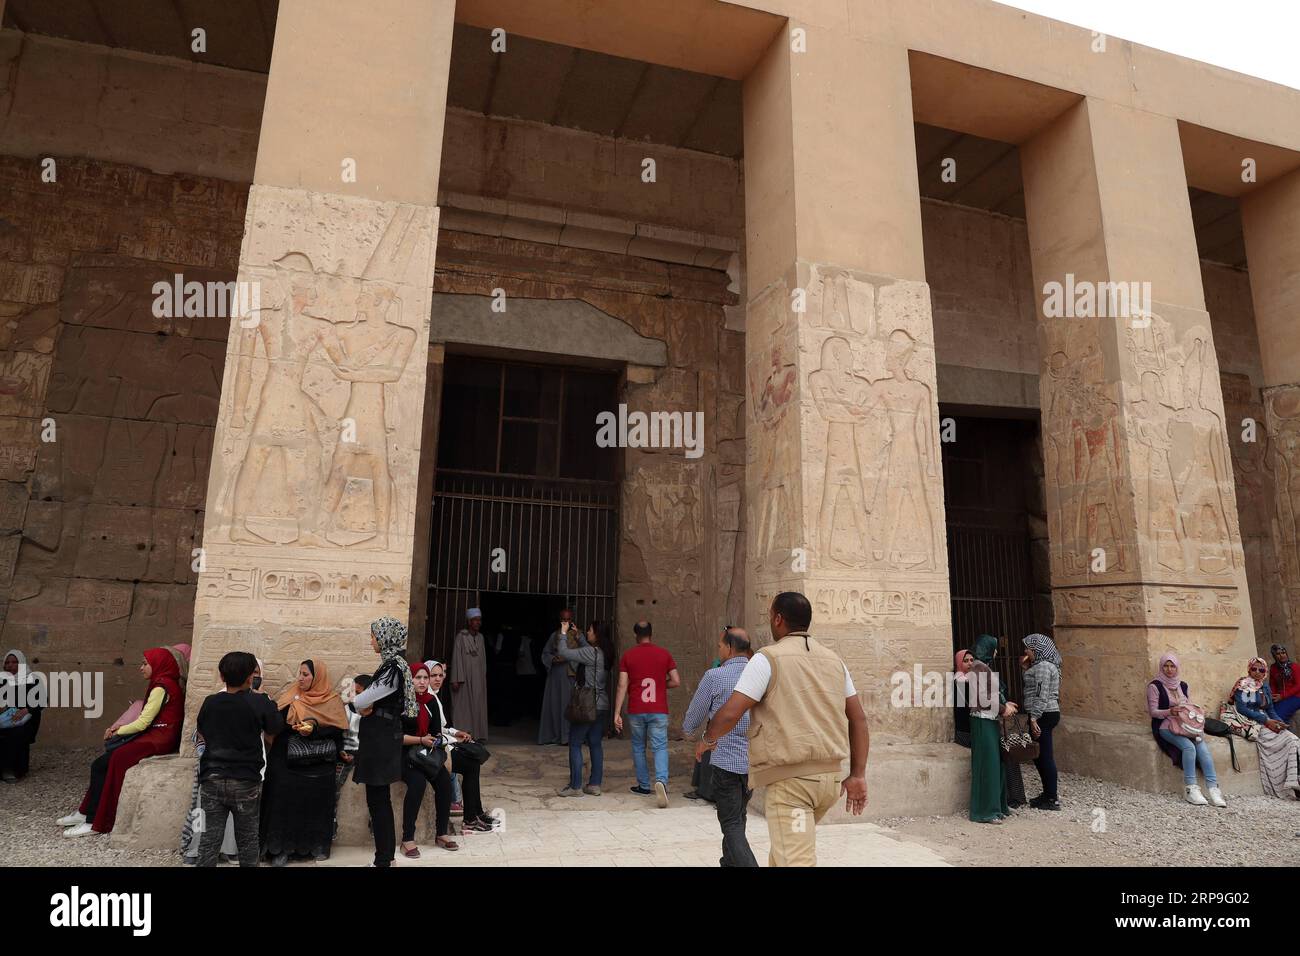 (190406) -- SOHAG, 6 avril 2019 (Xinhua) -- visite du temple mortuaire de Seti Ier à Sohag, Égypte, le 5 avril 2019. Le temple mortuaire de Seti I est un temple commémoratif pour Seti I, un roi de la 19e dynastie et père du roi Ramsès II dans l'Egypte ancienne. (Xinhua/Ahmed Gomaa) ÉGYPTE-SOHAG-TEMPLE MORTUAIRE DE SETI i PUBLICATIONxNOTxINxCHN Banque D'Images